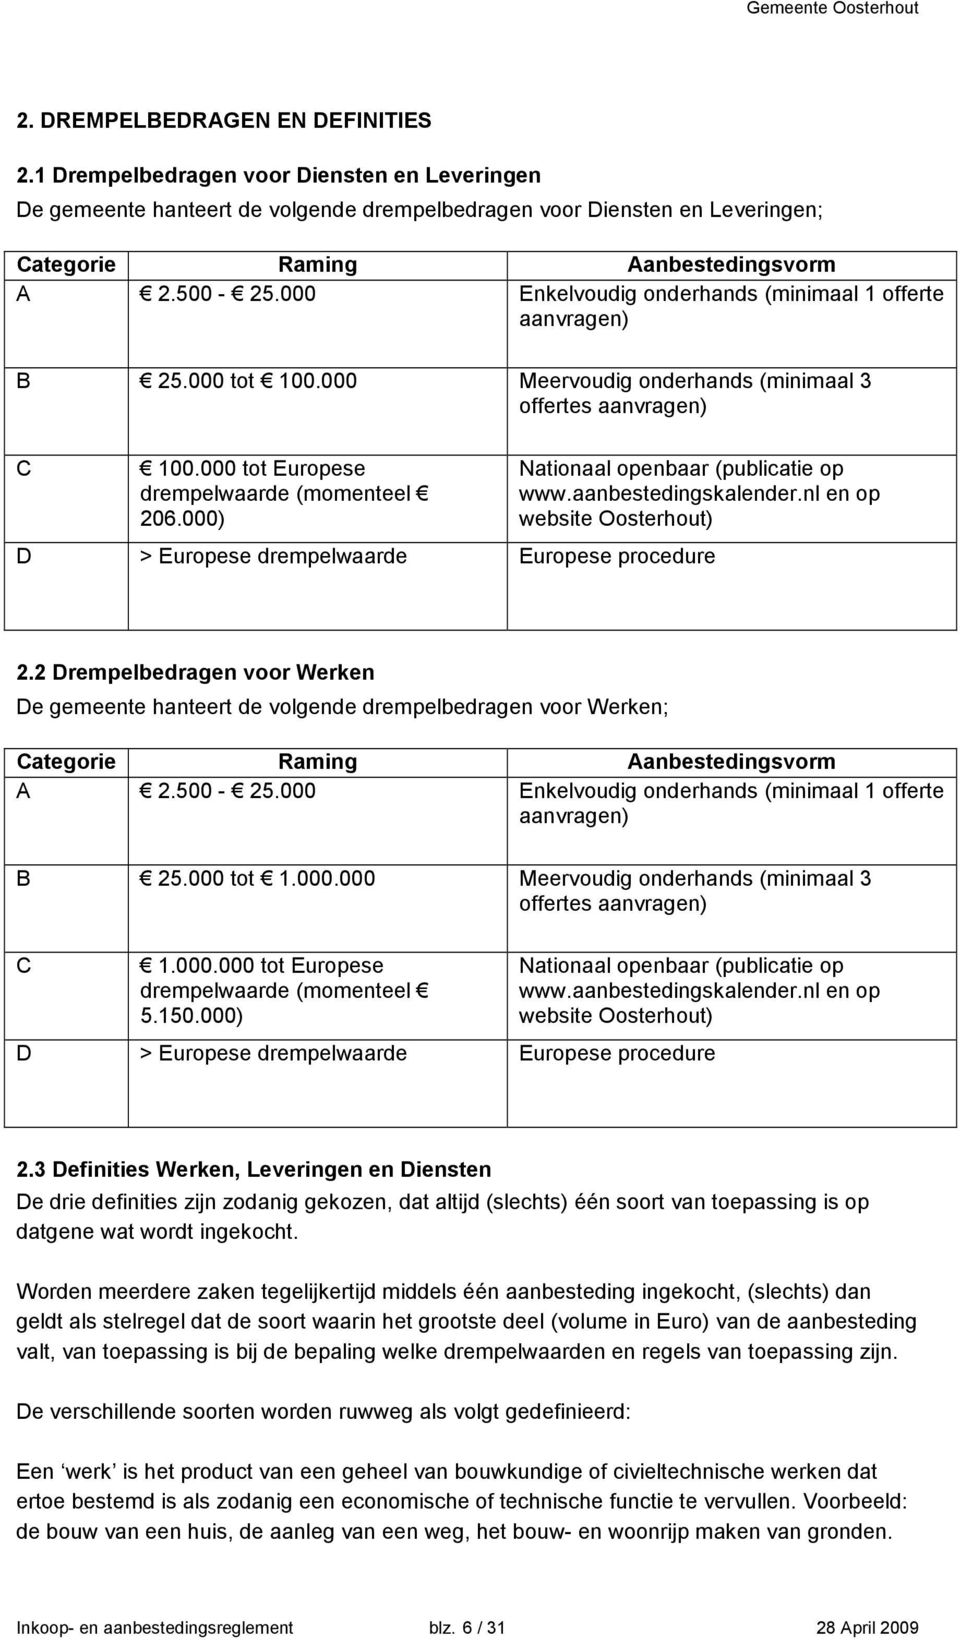 000) Nationaal openbaar (publicatie op www.aanbestedingskalender.nl en op website Oosterhout) D > Europese drempelwaarde Europese procedure 2.